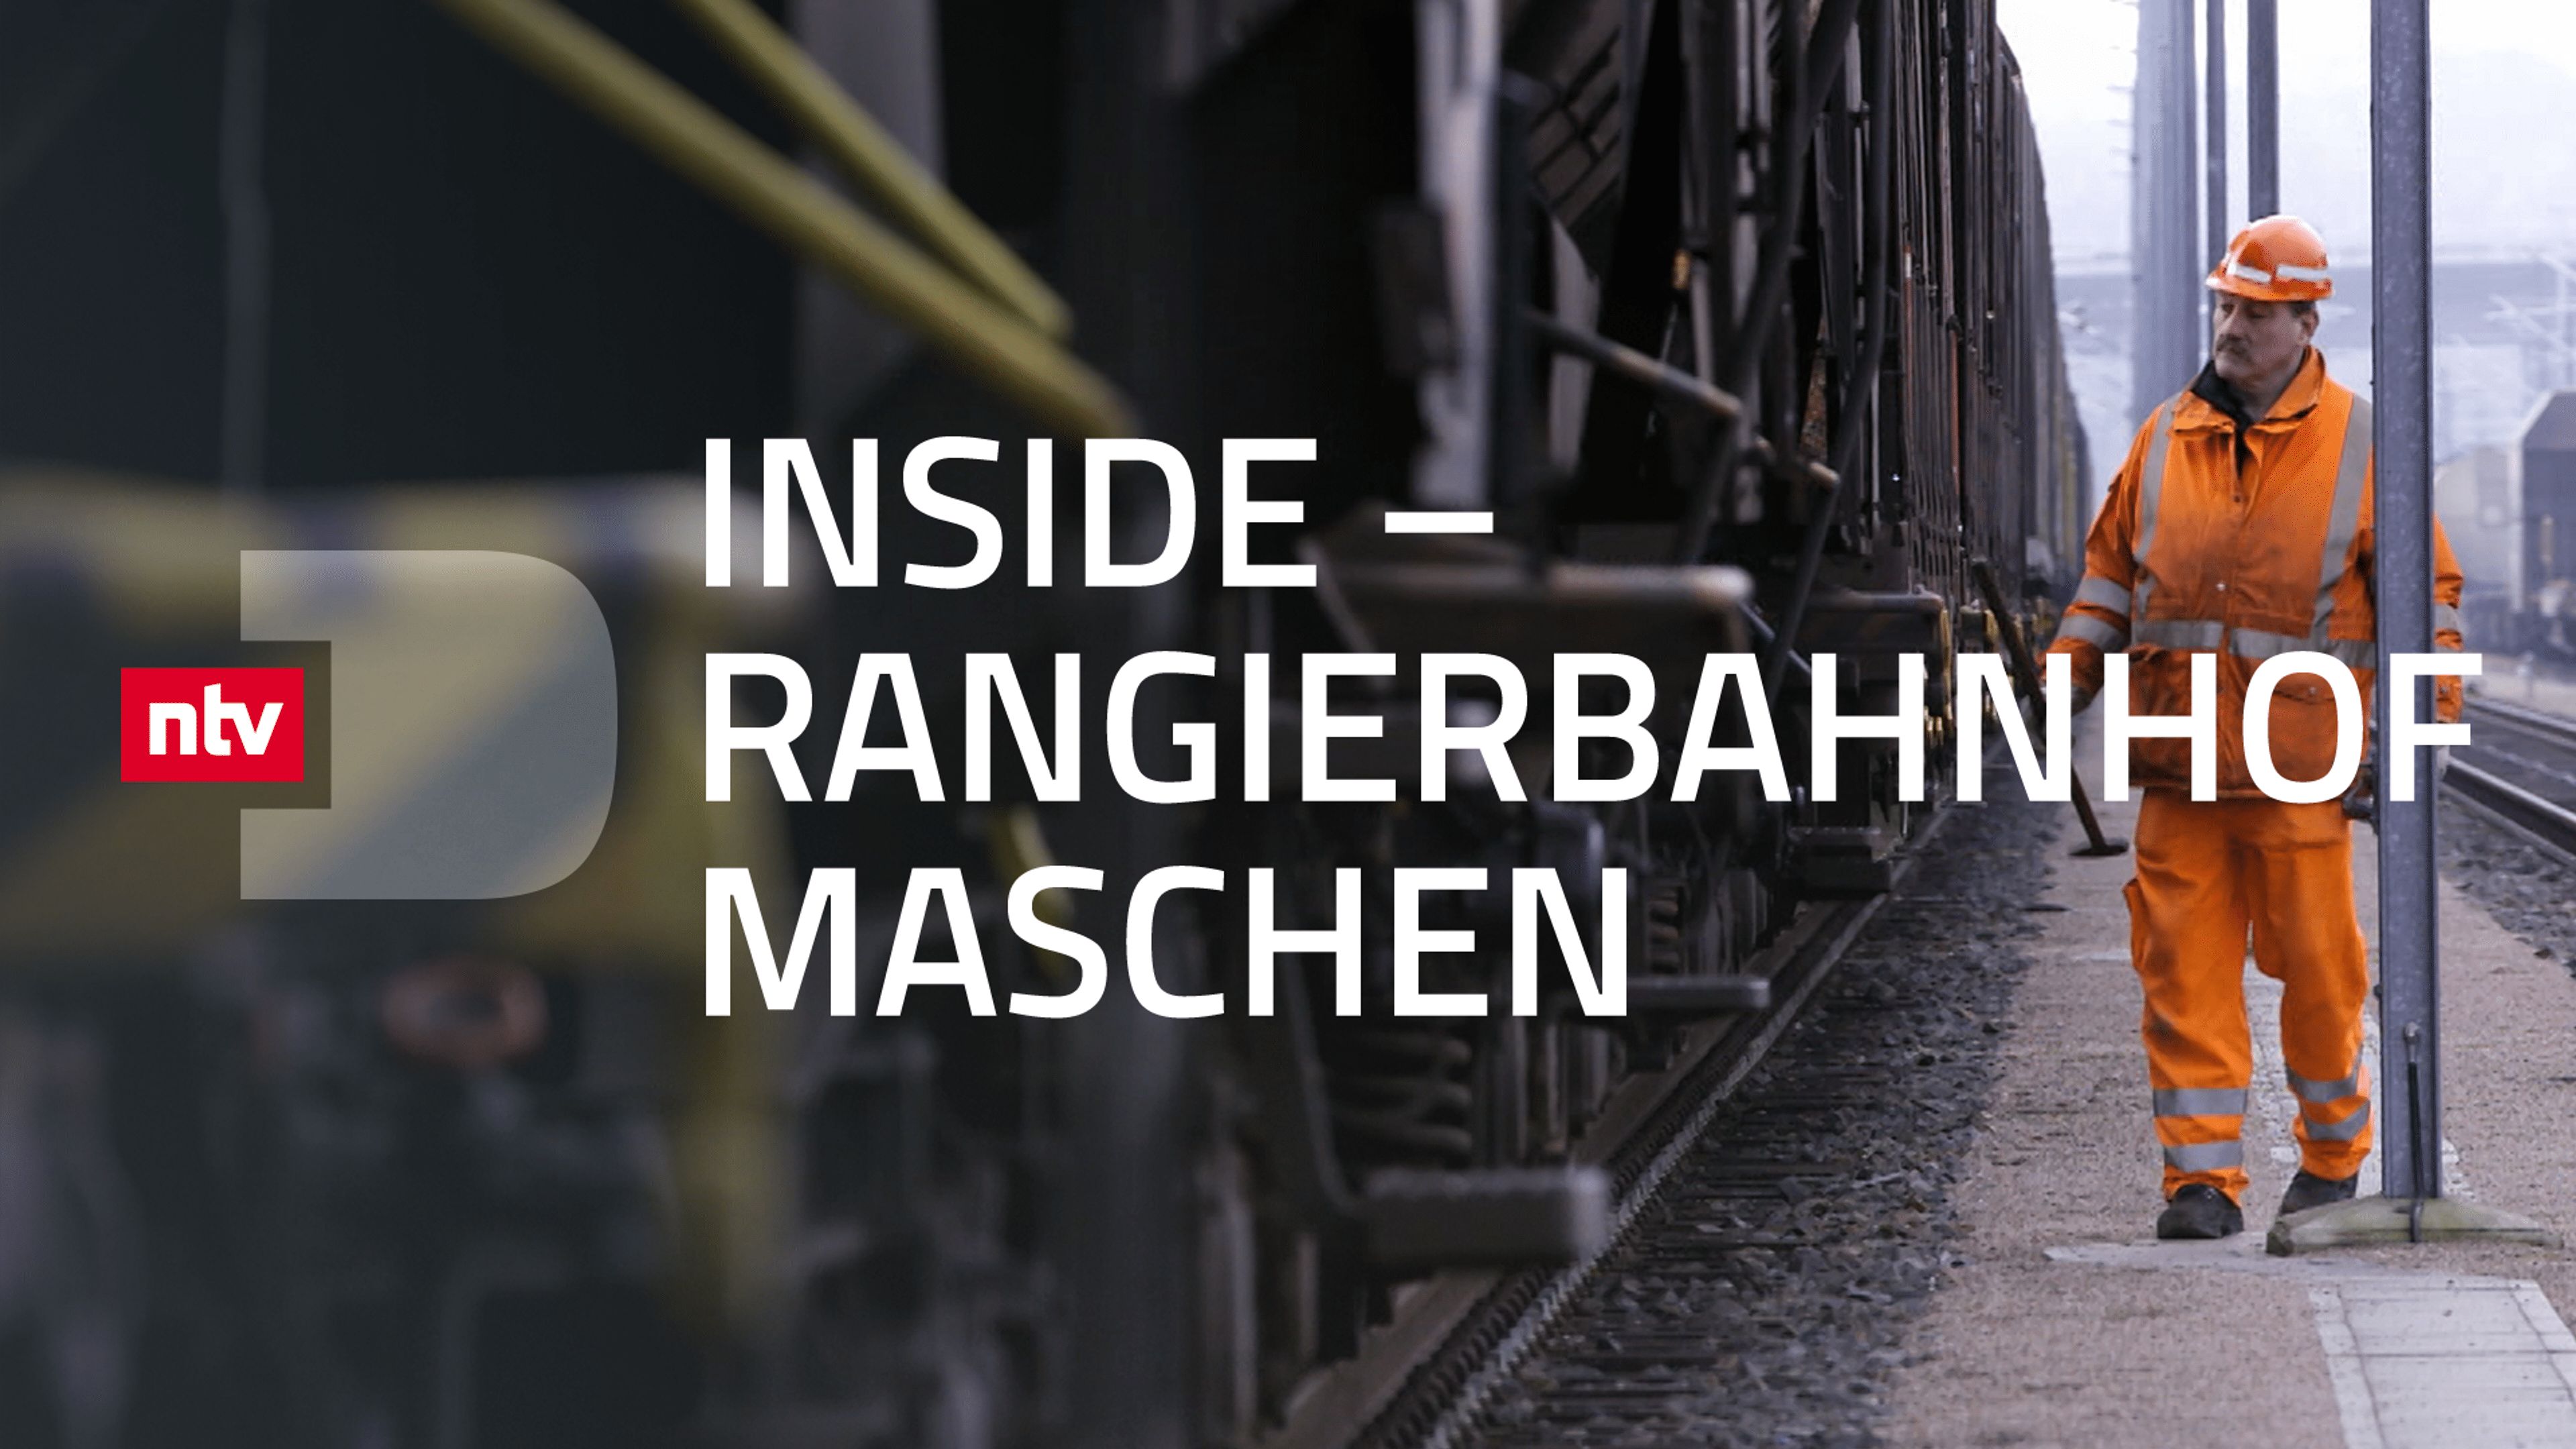 Inside - Rangierbahnhof Maschen